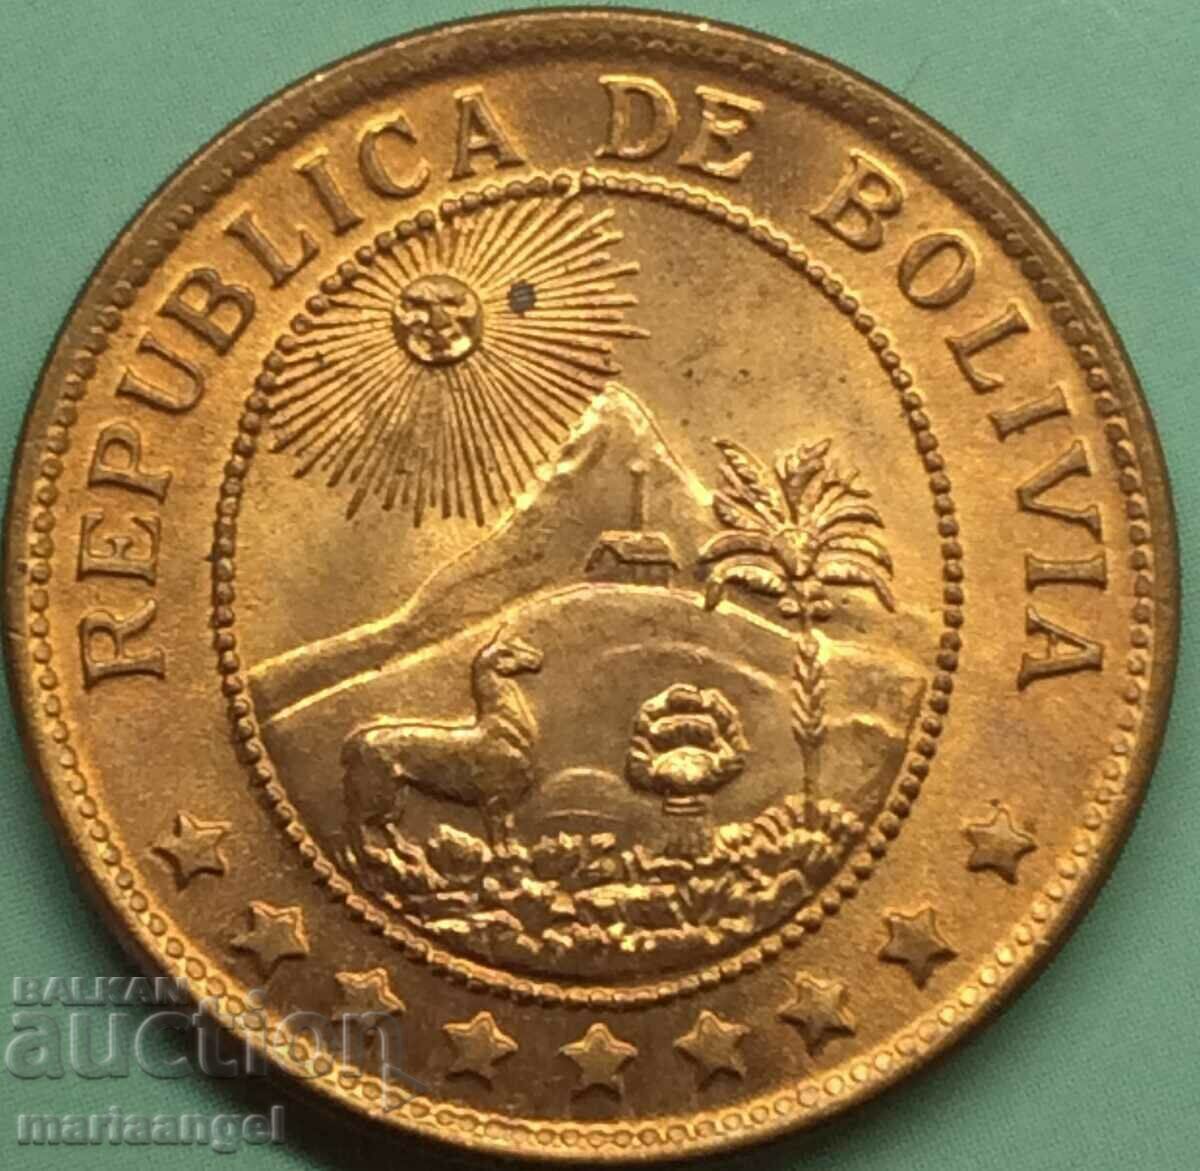 Βολιβία 1942 Restrike 50 λεπτών - για σπάνιο νόμισμα